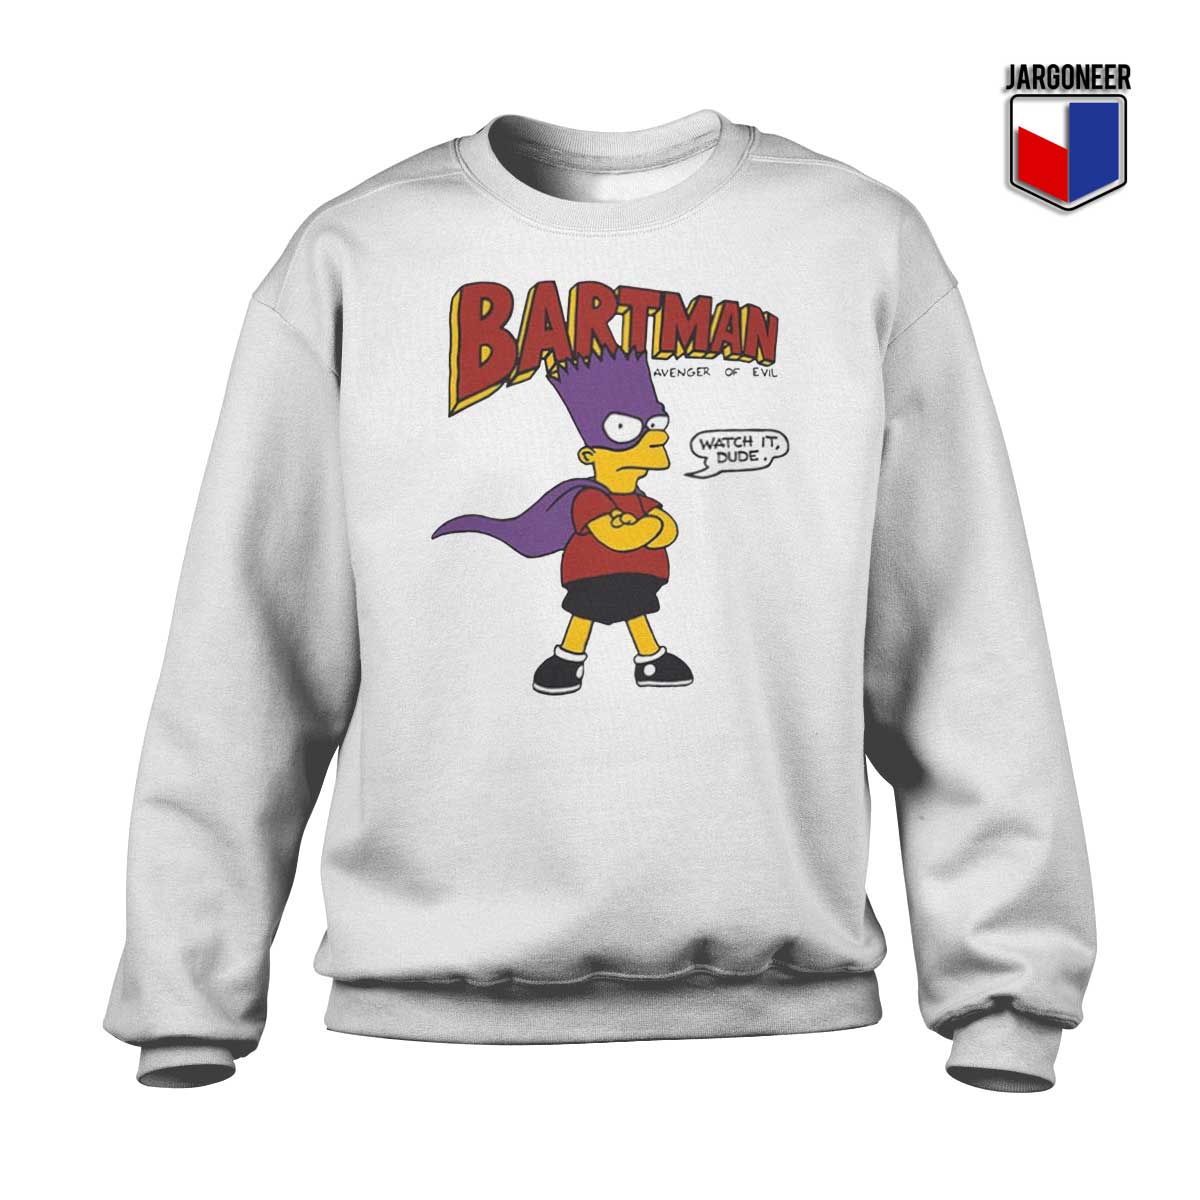 Bartman Avenger of Evil Sweatshirt - Shop Unique Graphic Cool Shirt Designs